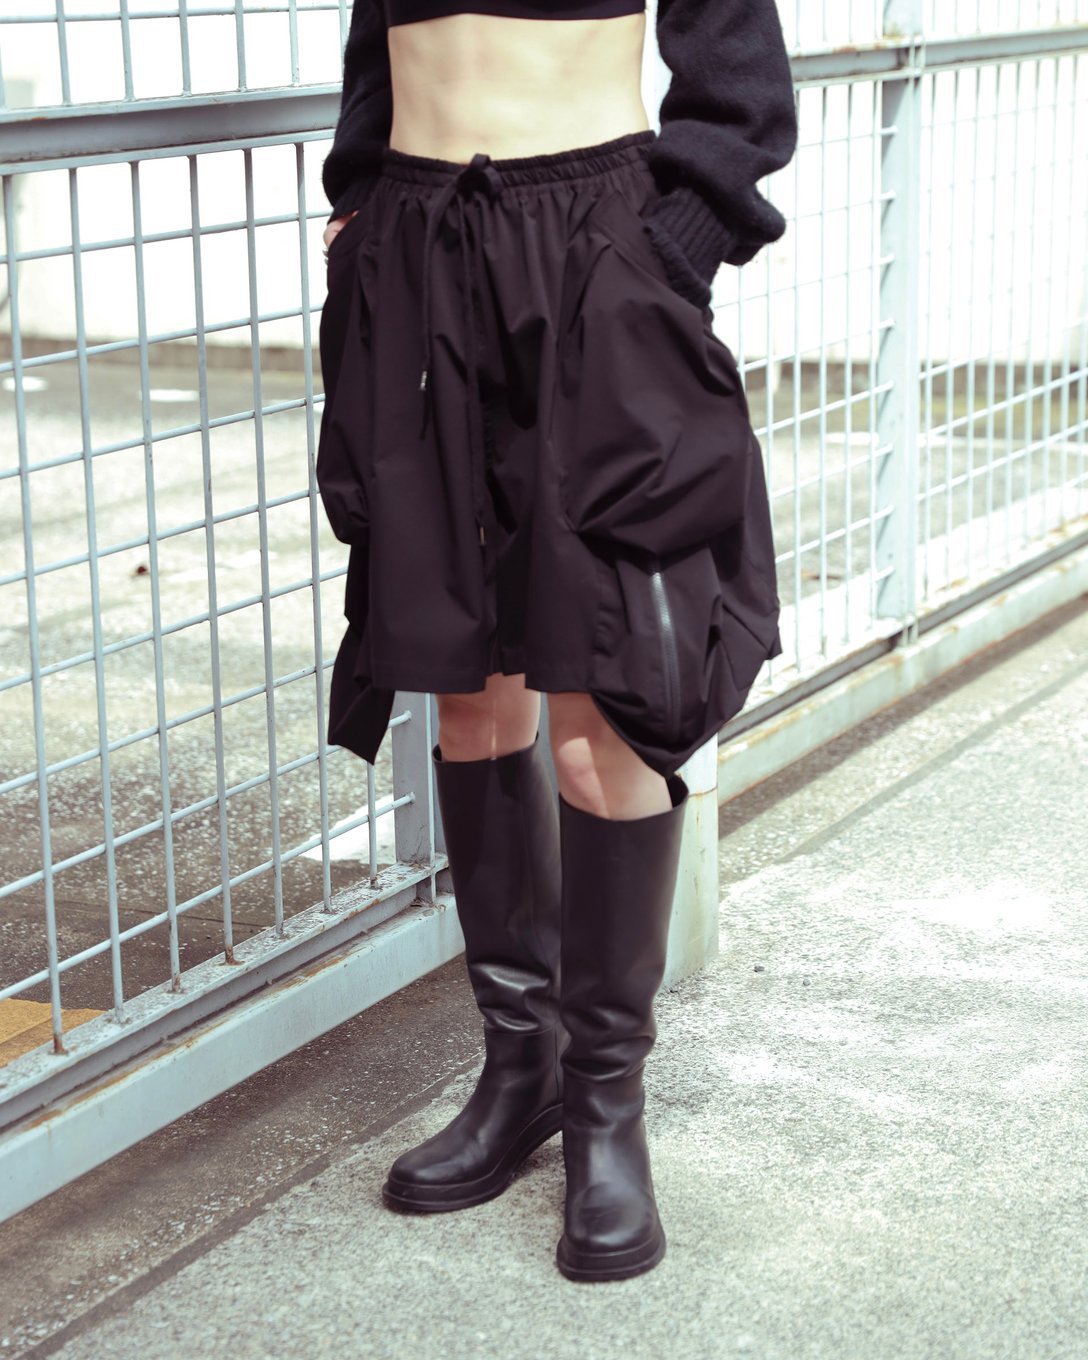 ヨシオクボのショーツを着用した女性モデル